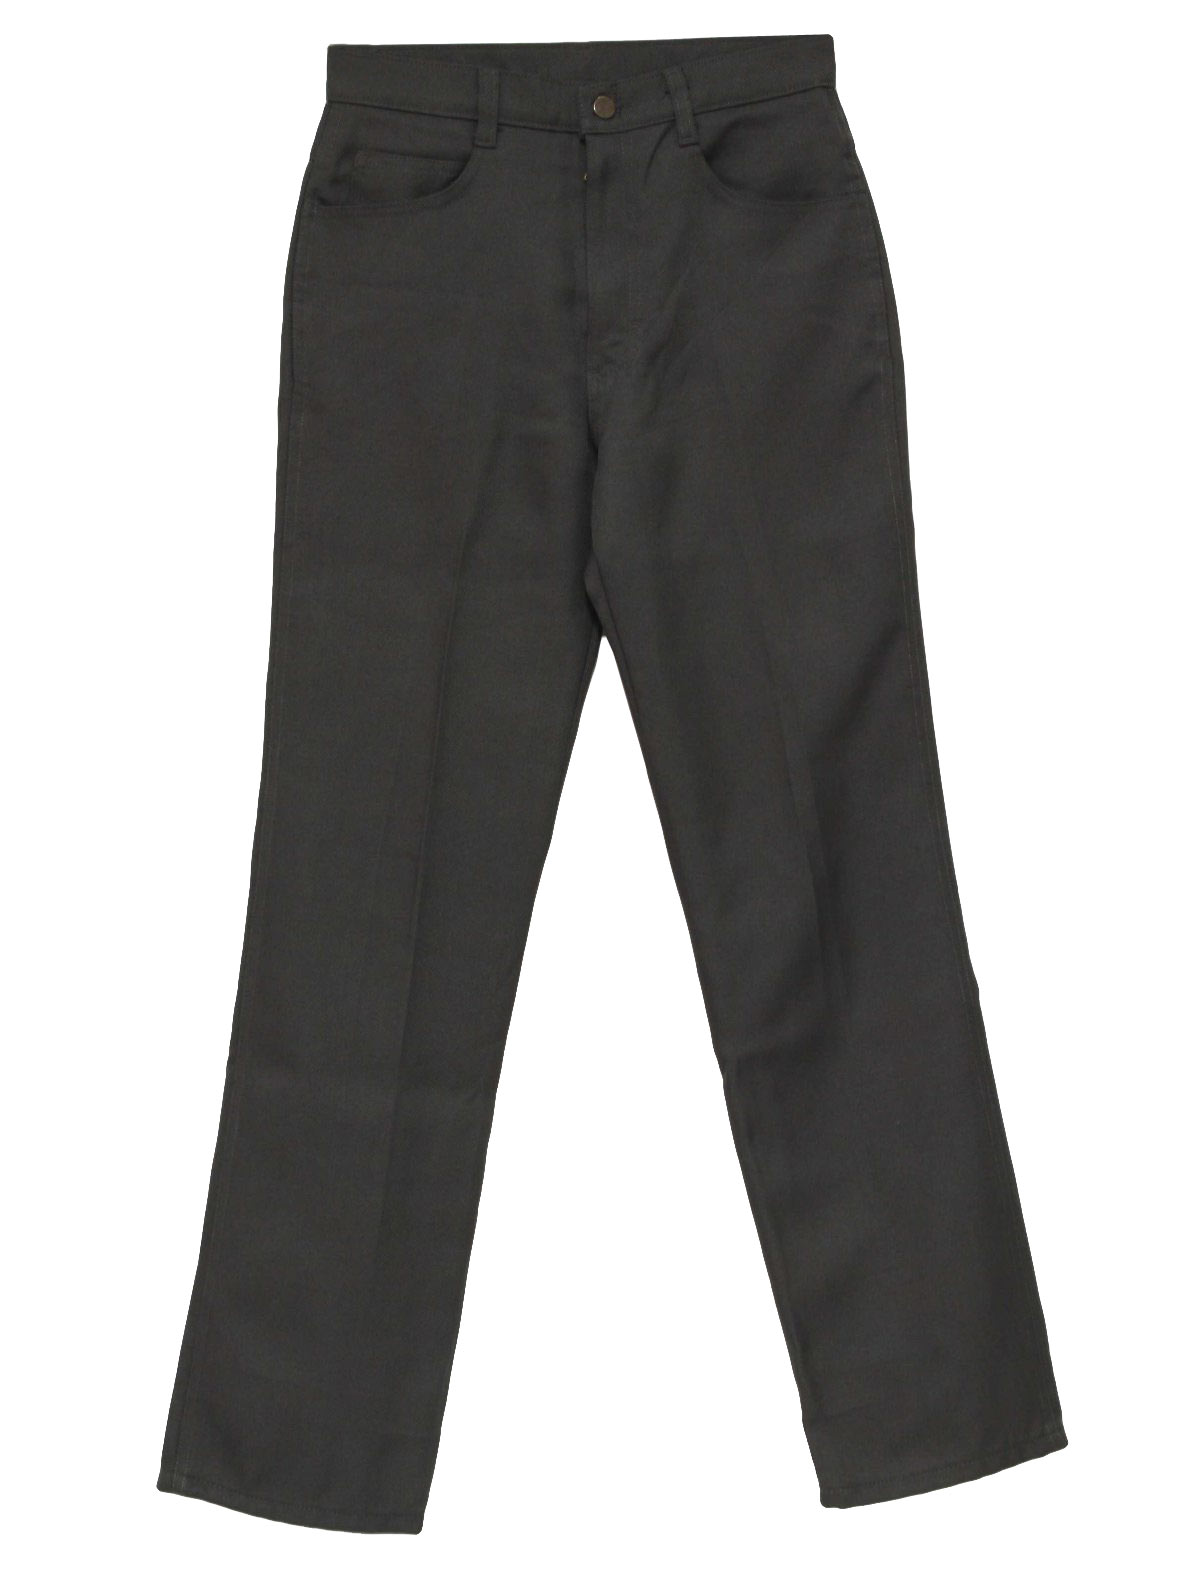 80s Pants (Wrangler): 80s -Wrangler- Mens grey twill polyester jeans ...